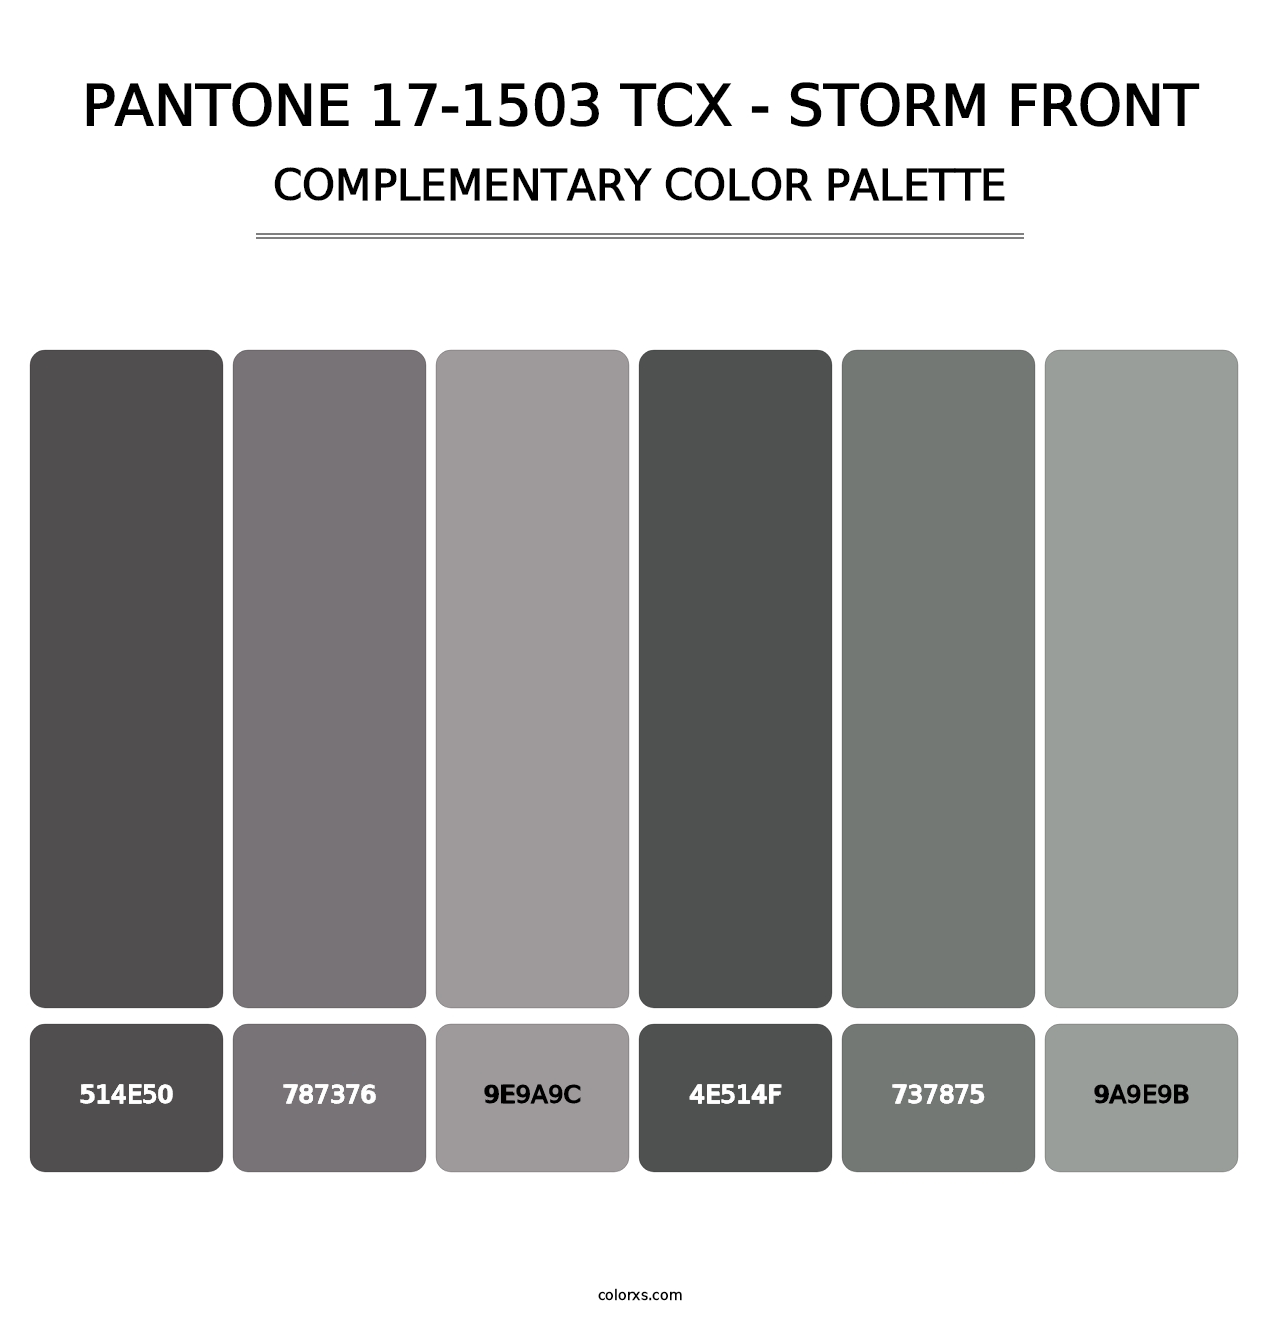 PANTONE 17-1503 TCX - Storm Front - Complementary Color Palette